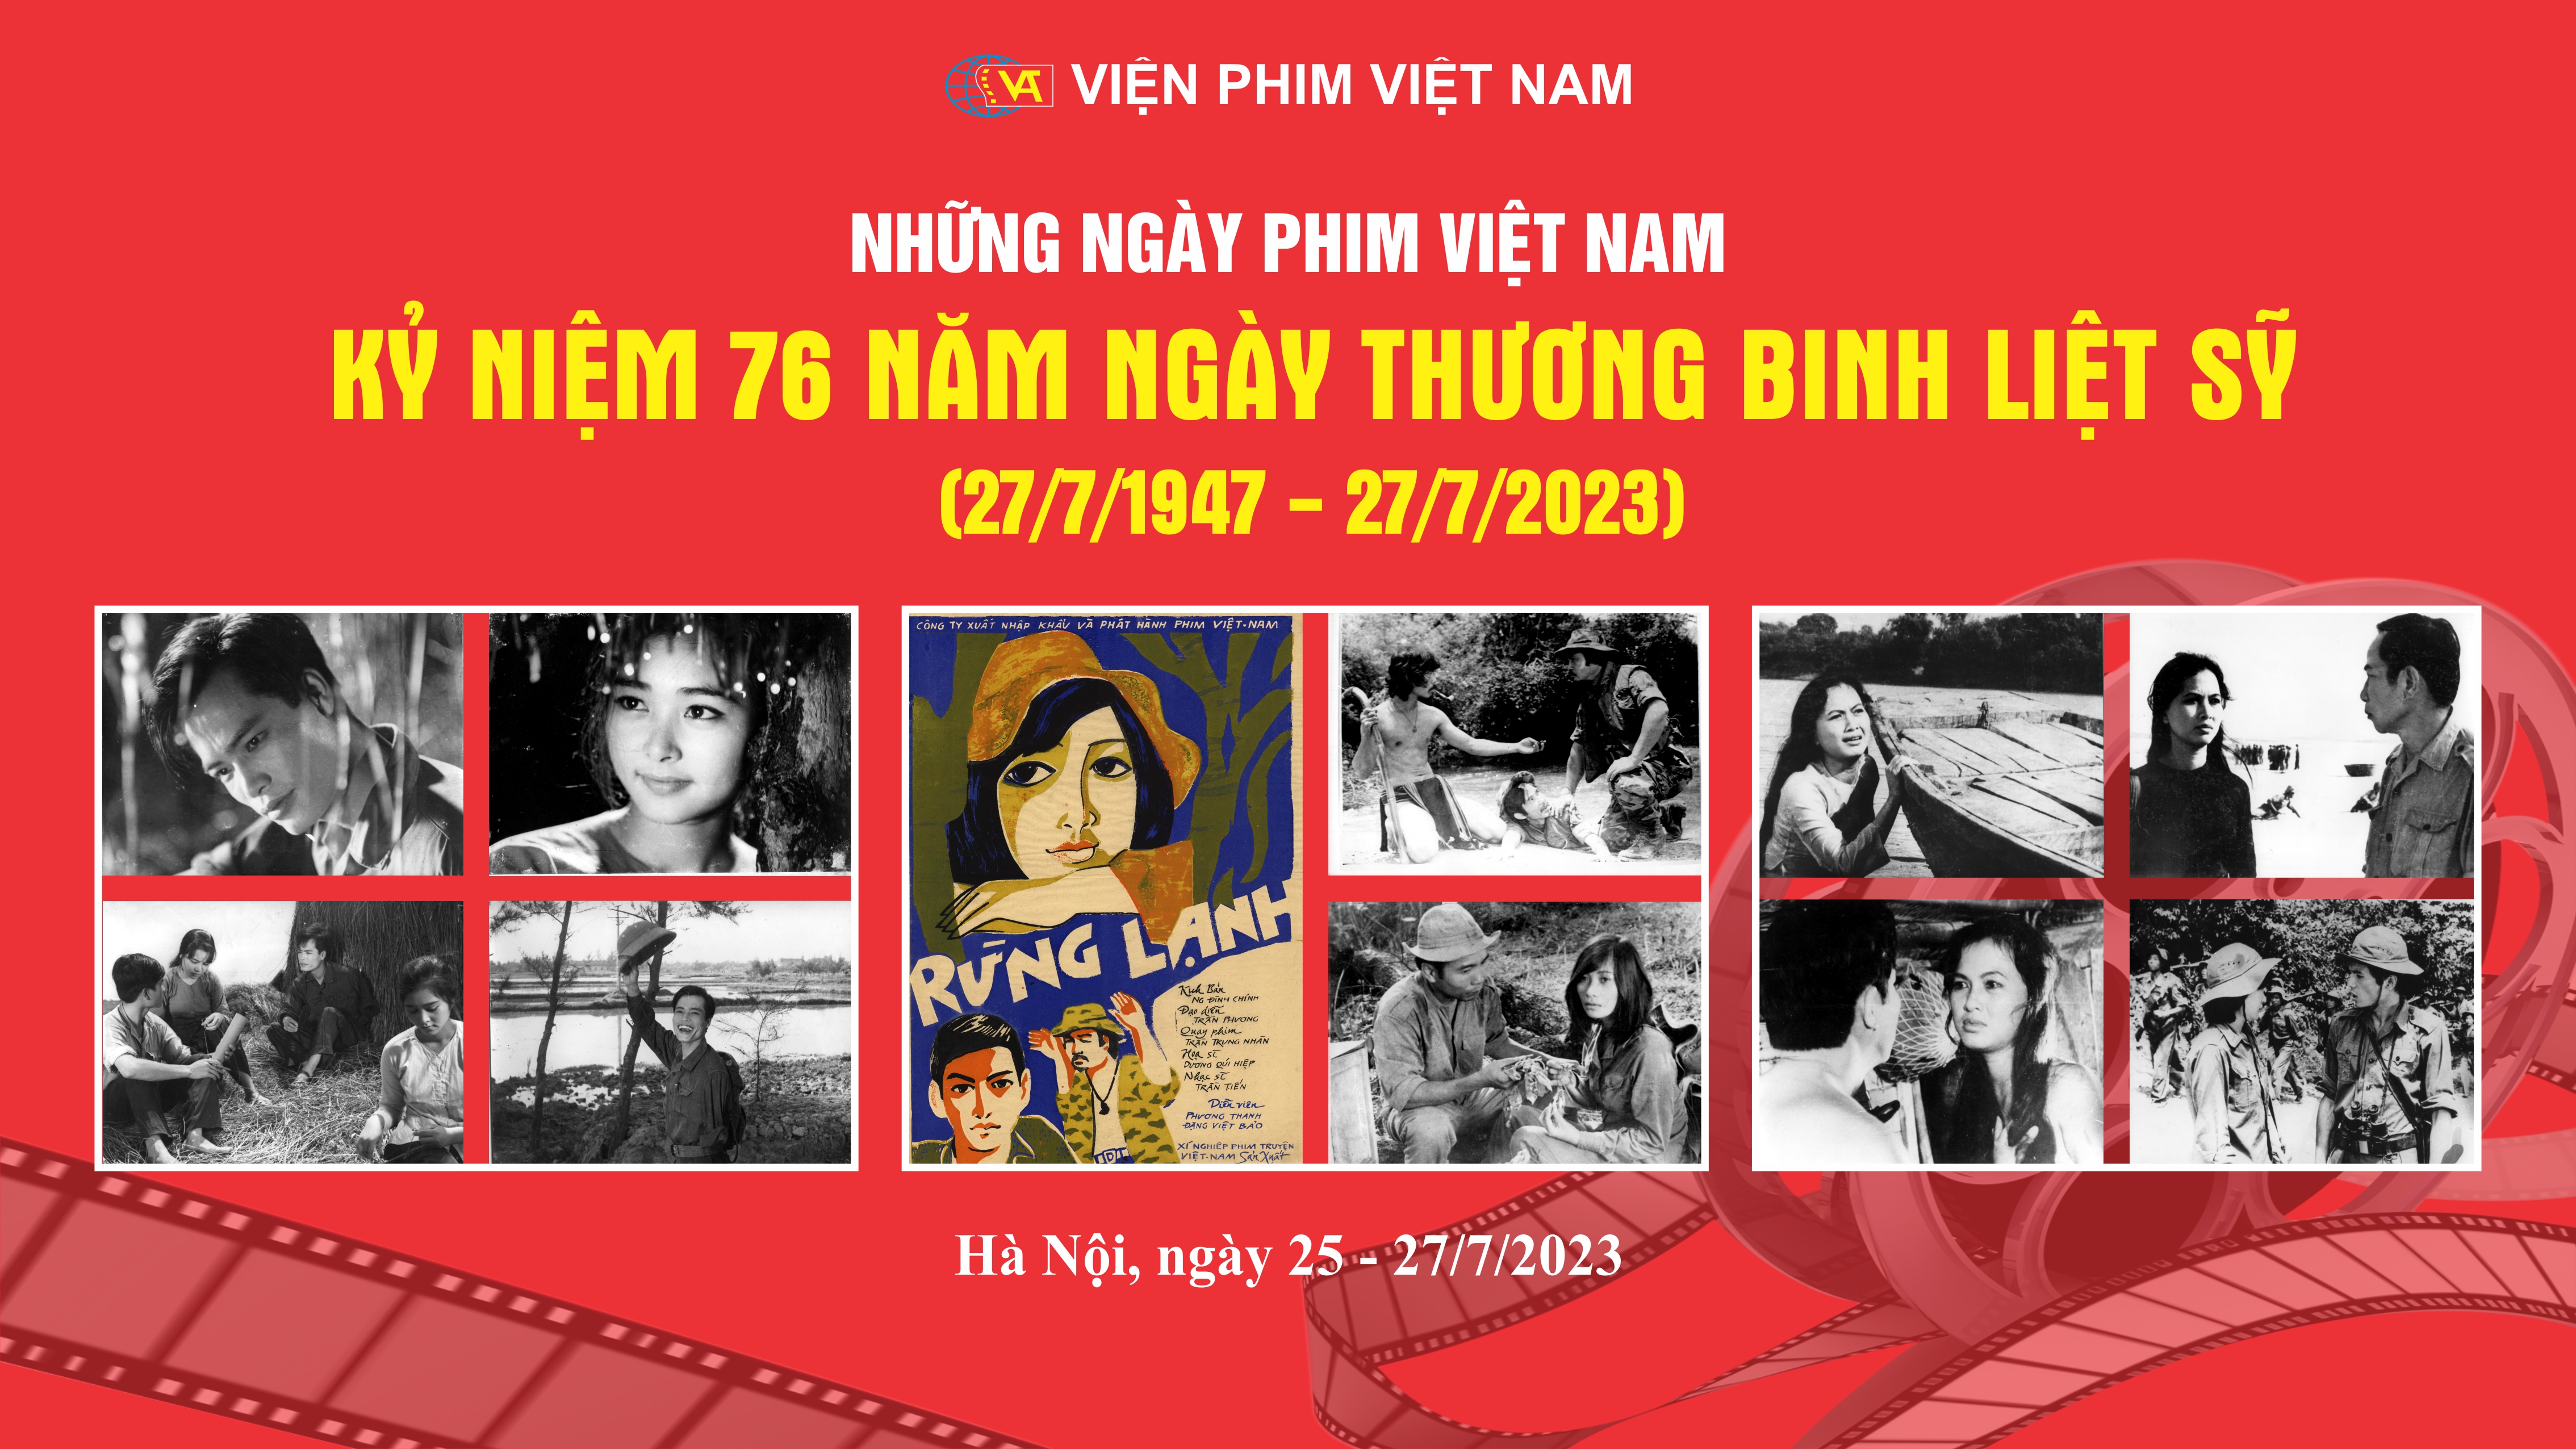 Dấu ấn phim truyện chiến tranh Cách mạng Việt Nam với khán giả sinh viên